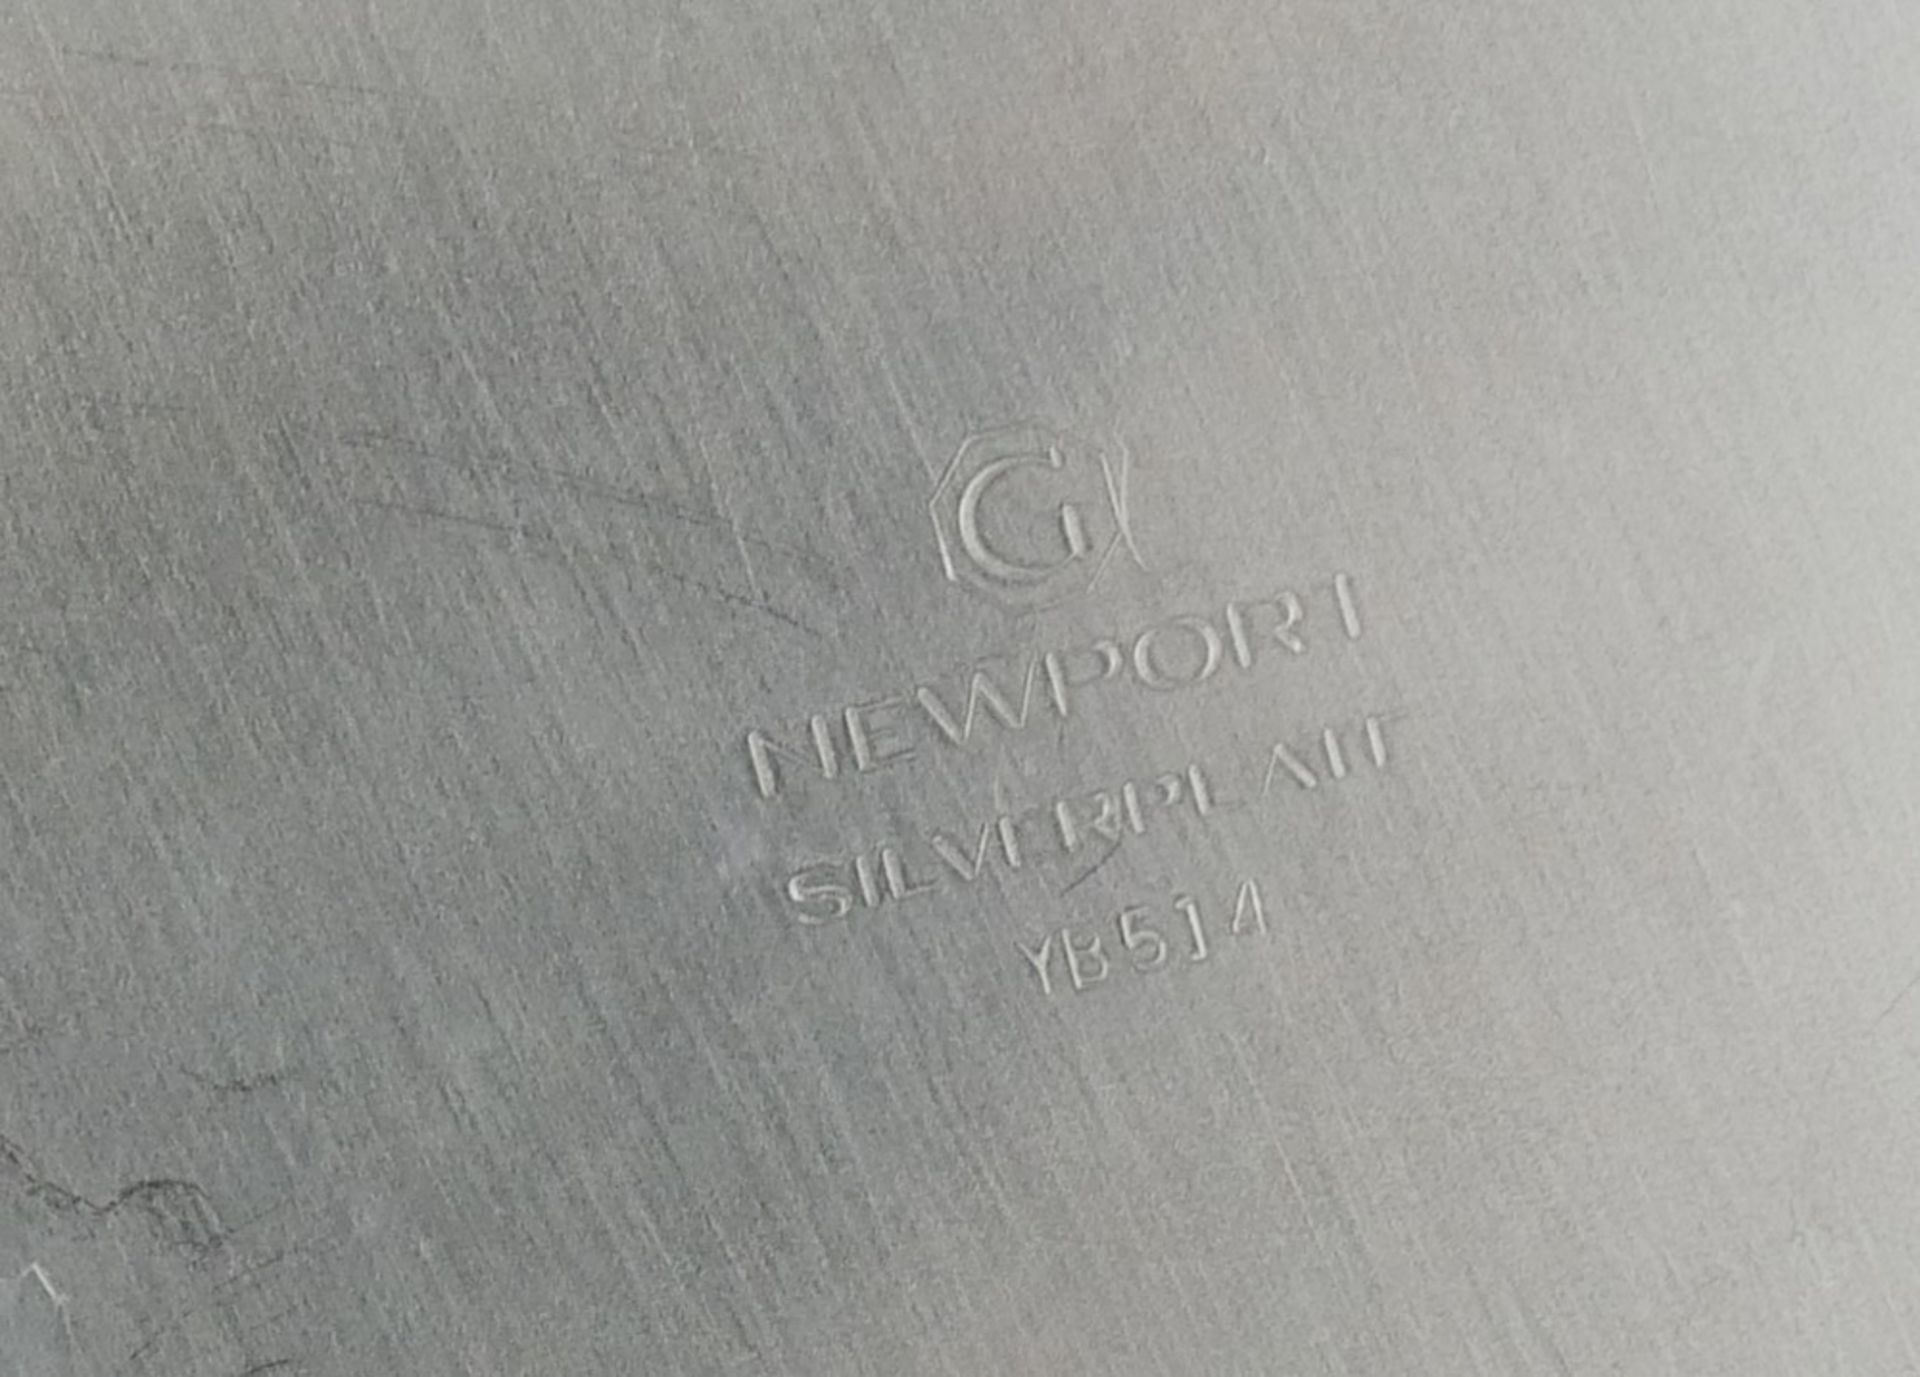 Newport Silverplate YB514, versilberte Schüssel mit Deckel, Innen mit Glasauflaufform. - Image 4 of 4